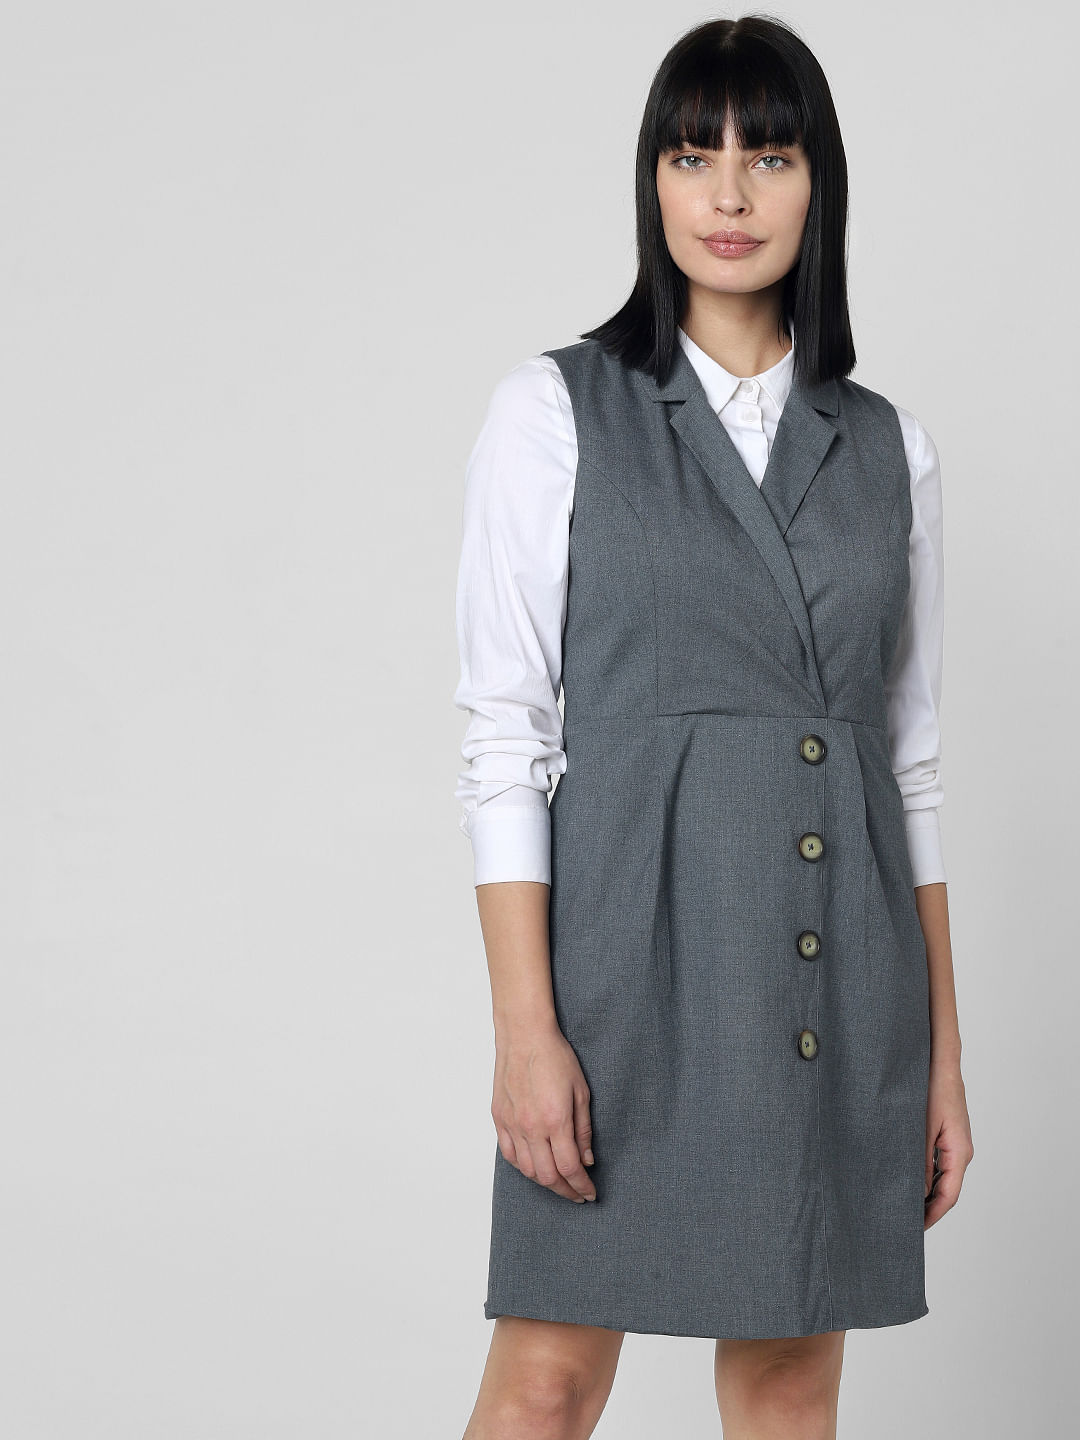 Women's Grey Maxi Dress Floral - 1Pc Set - Saras The Label | Maxi dress,  Grey maxi dress, Long maxi dress